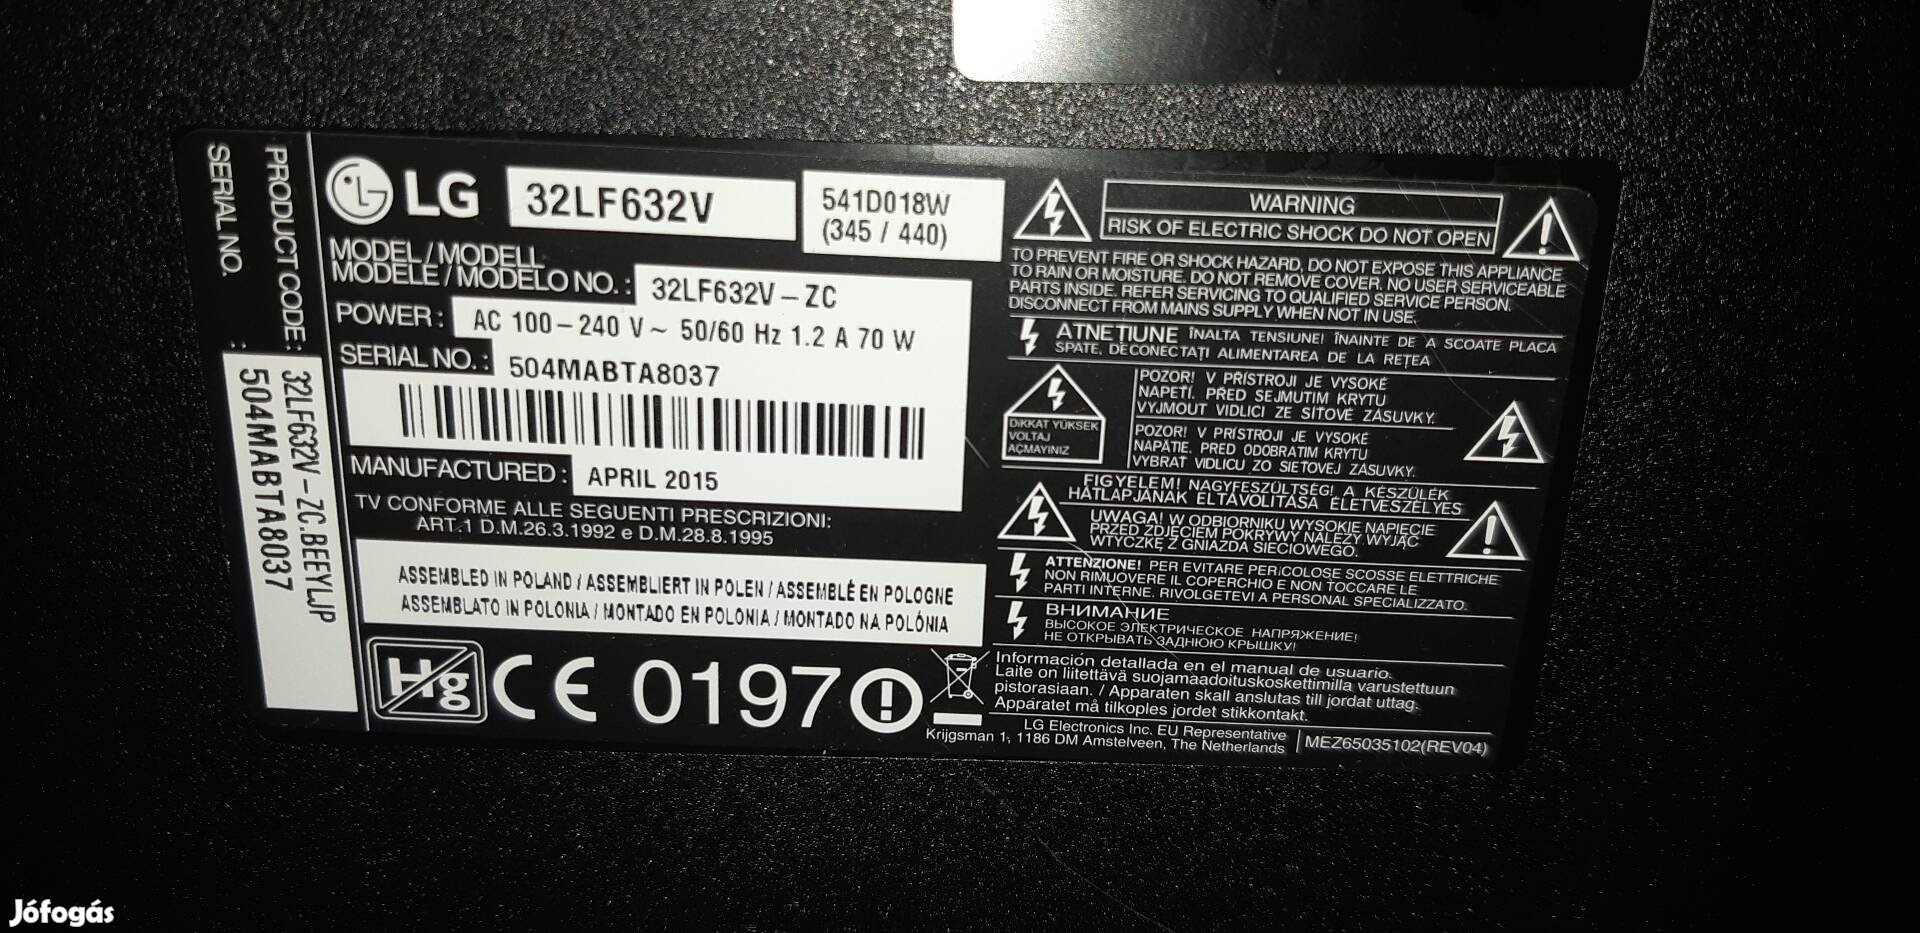 LG32LF632 USB-s törött led tv alkatrésznek